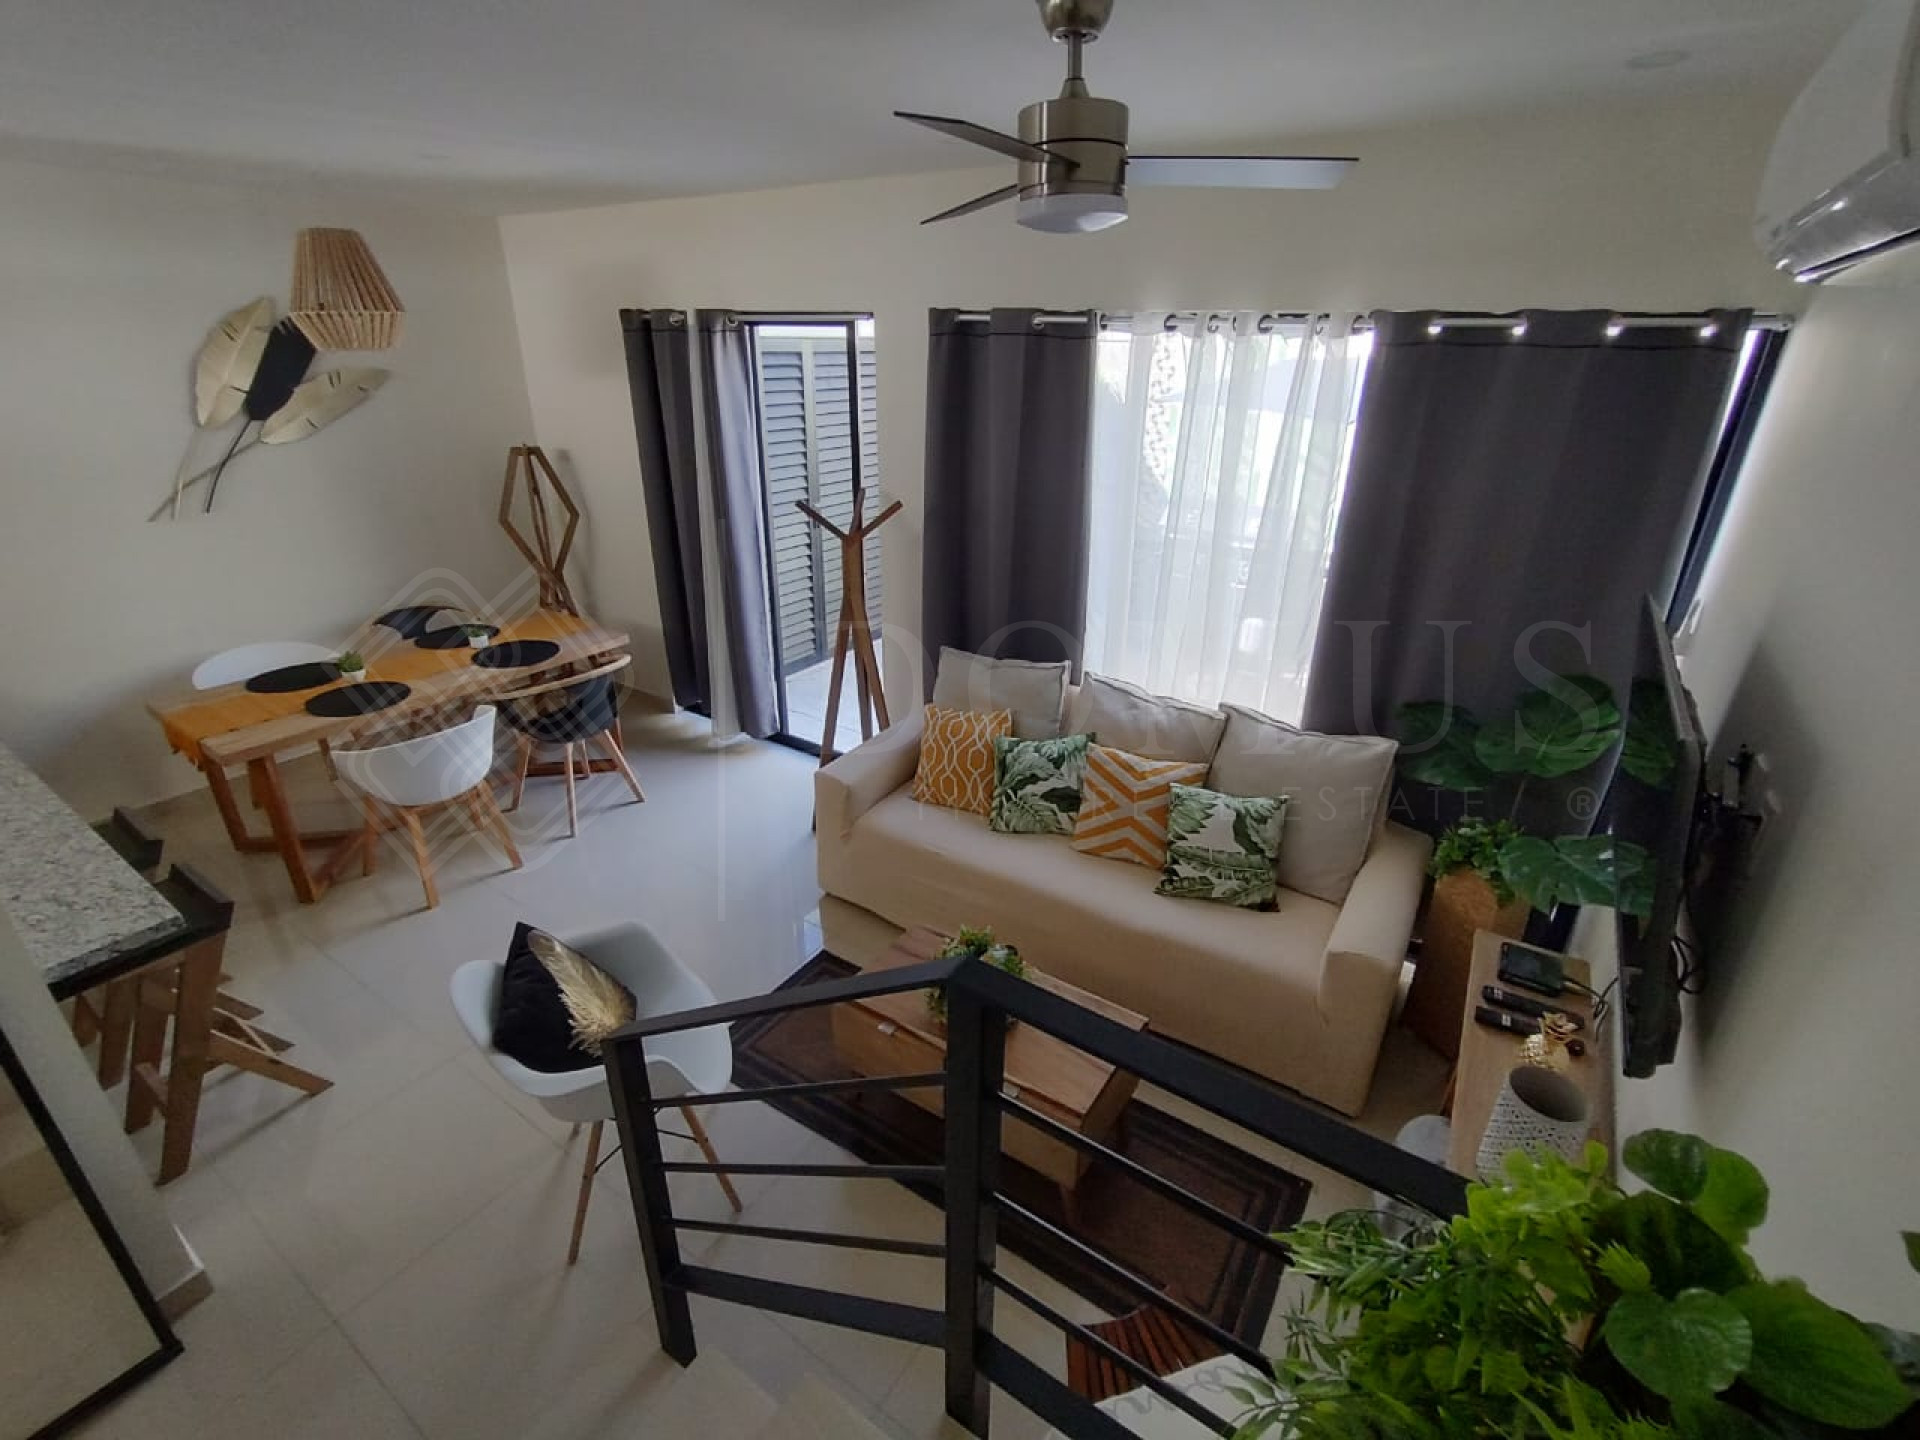 Galeria de Ébano Residencial Casa 54 - Casa en venta en fraccionamiento residencial, Puerto Vallarta